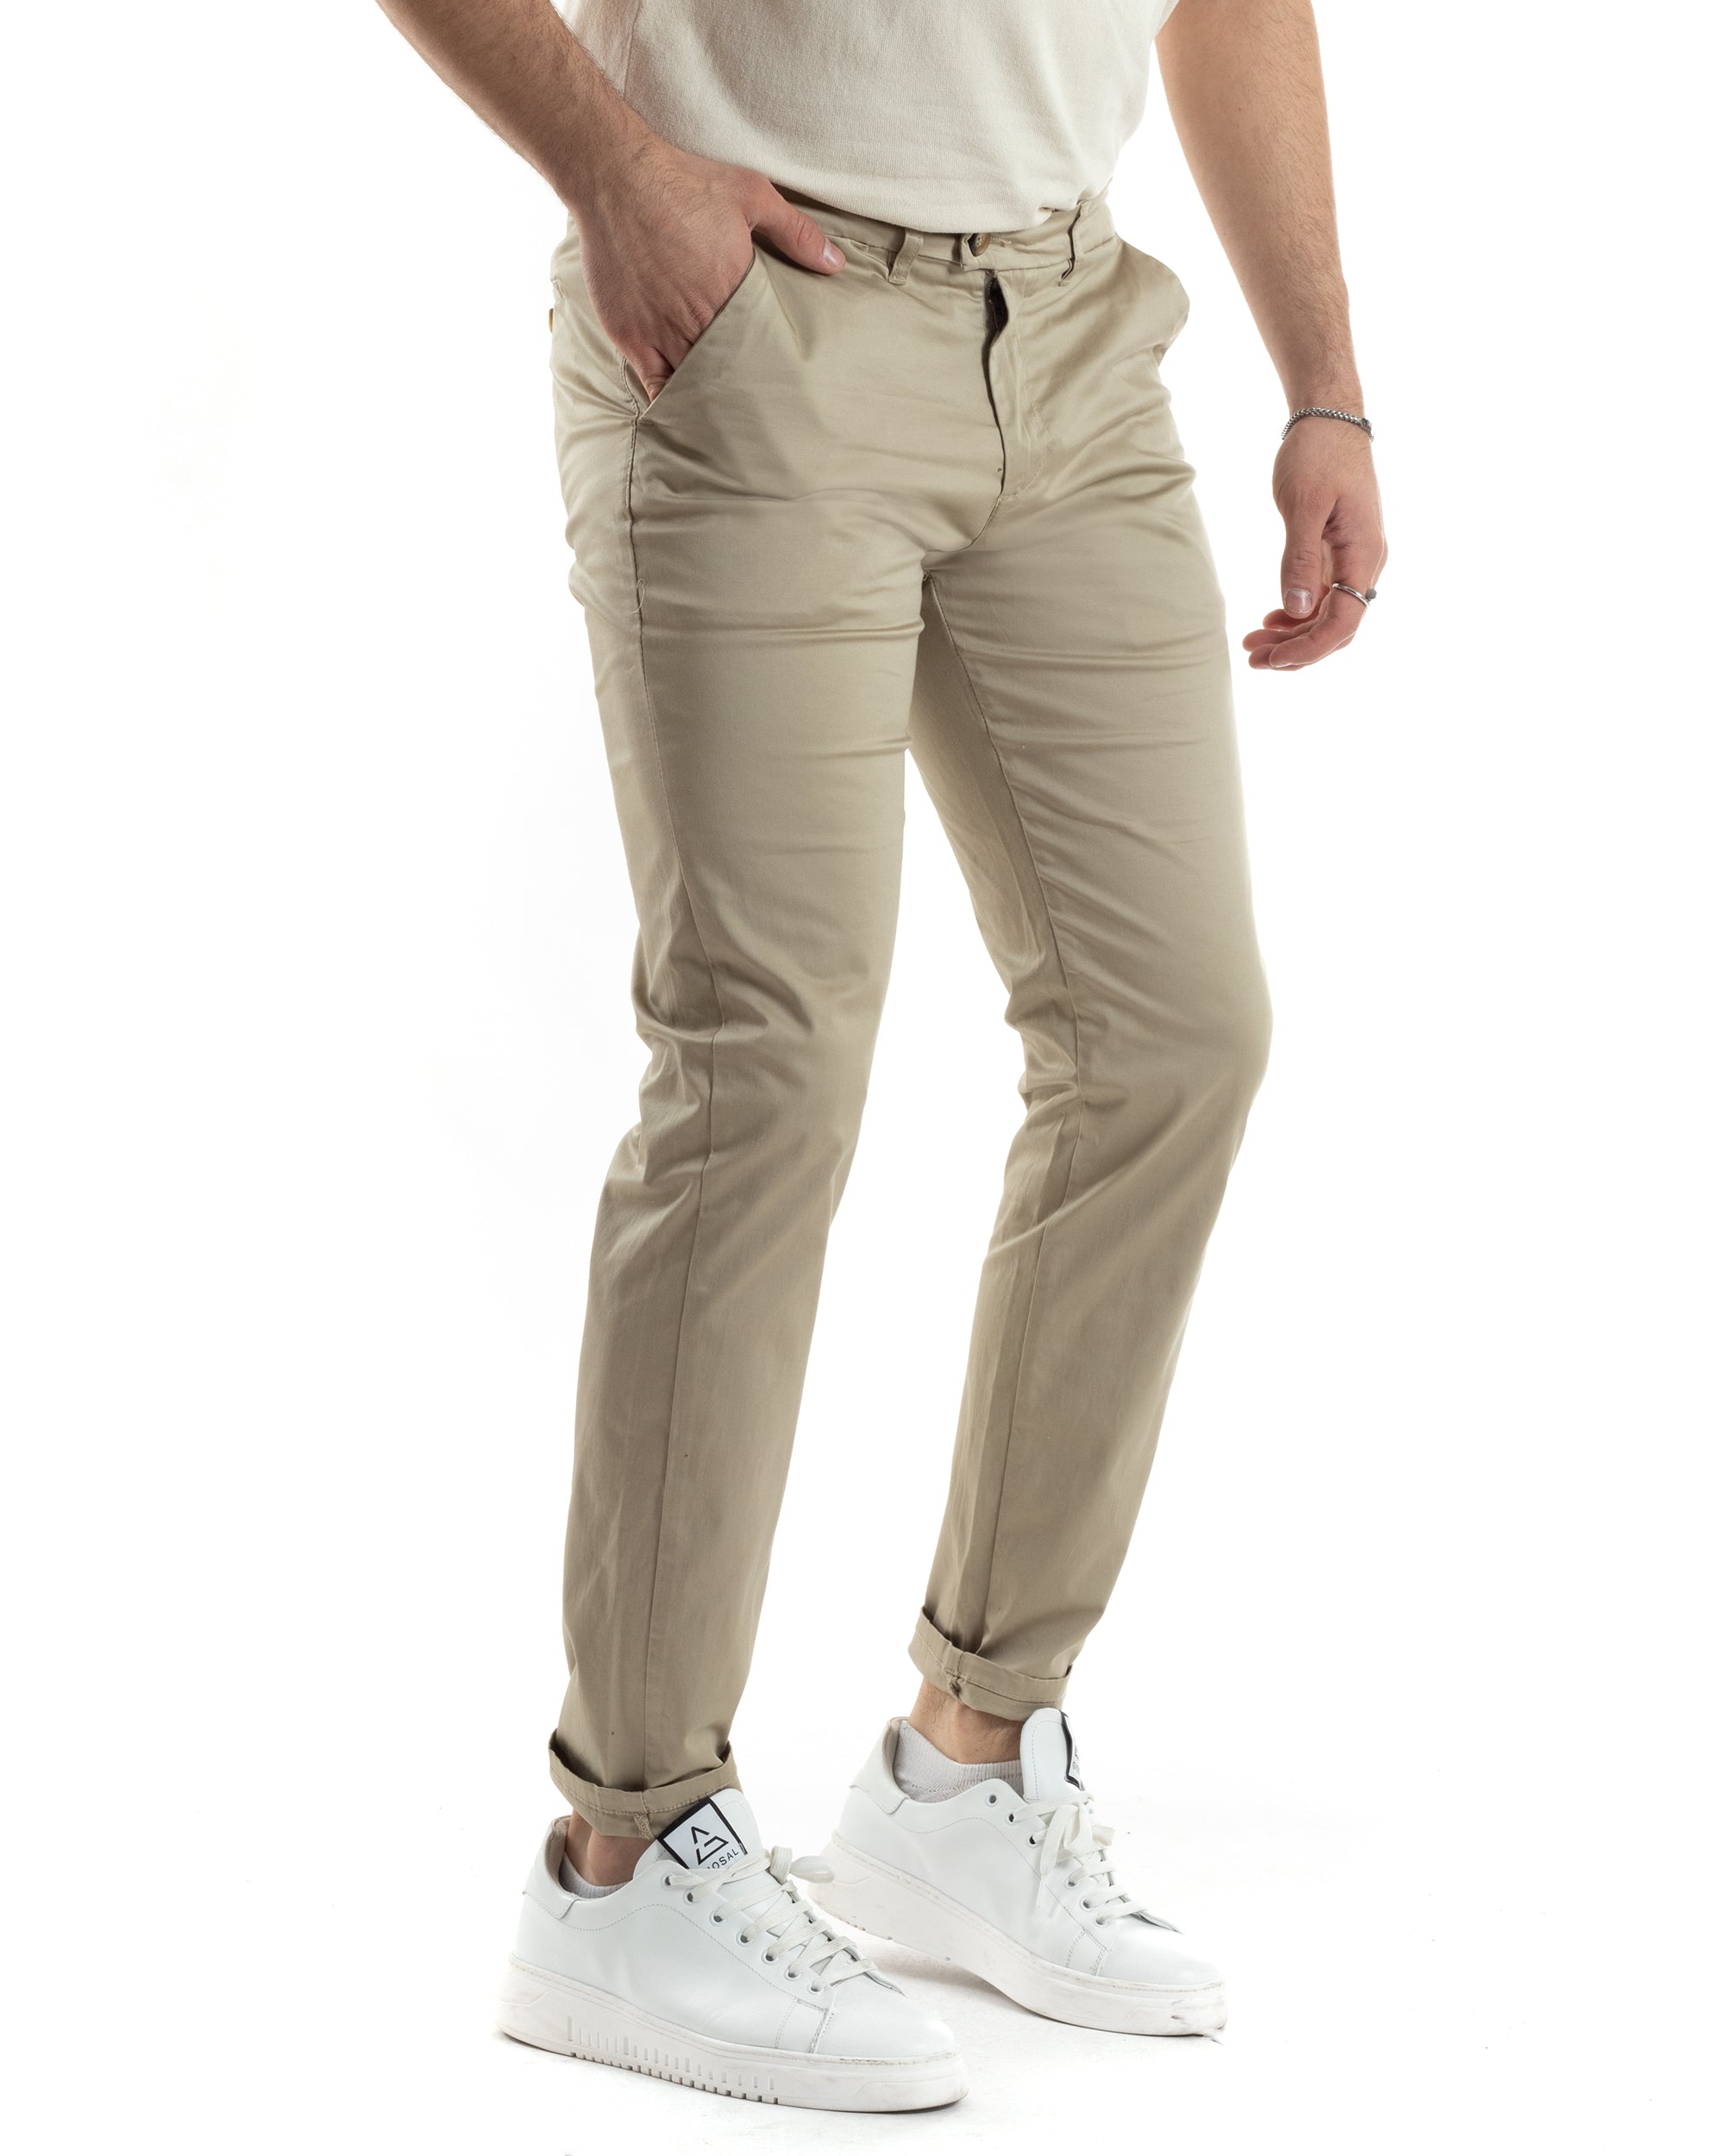 Pantaloni Uomo Cotone Raso Tasca America Slim Fit Abbottonatura Allungata Tinta Unita Beige GIOSAL-P6060A